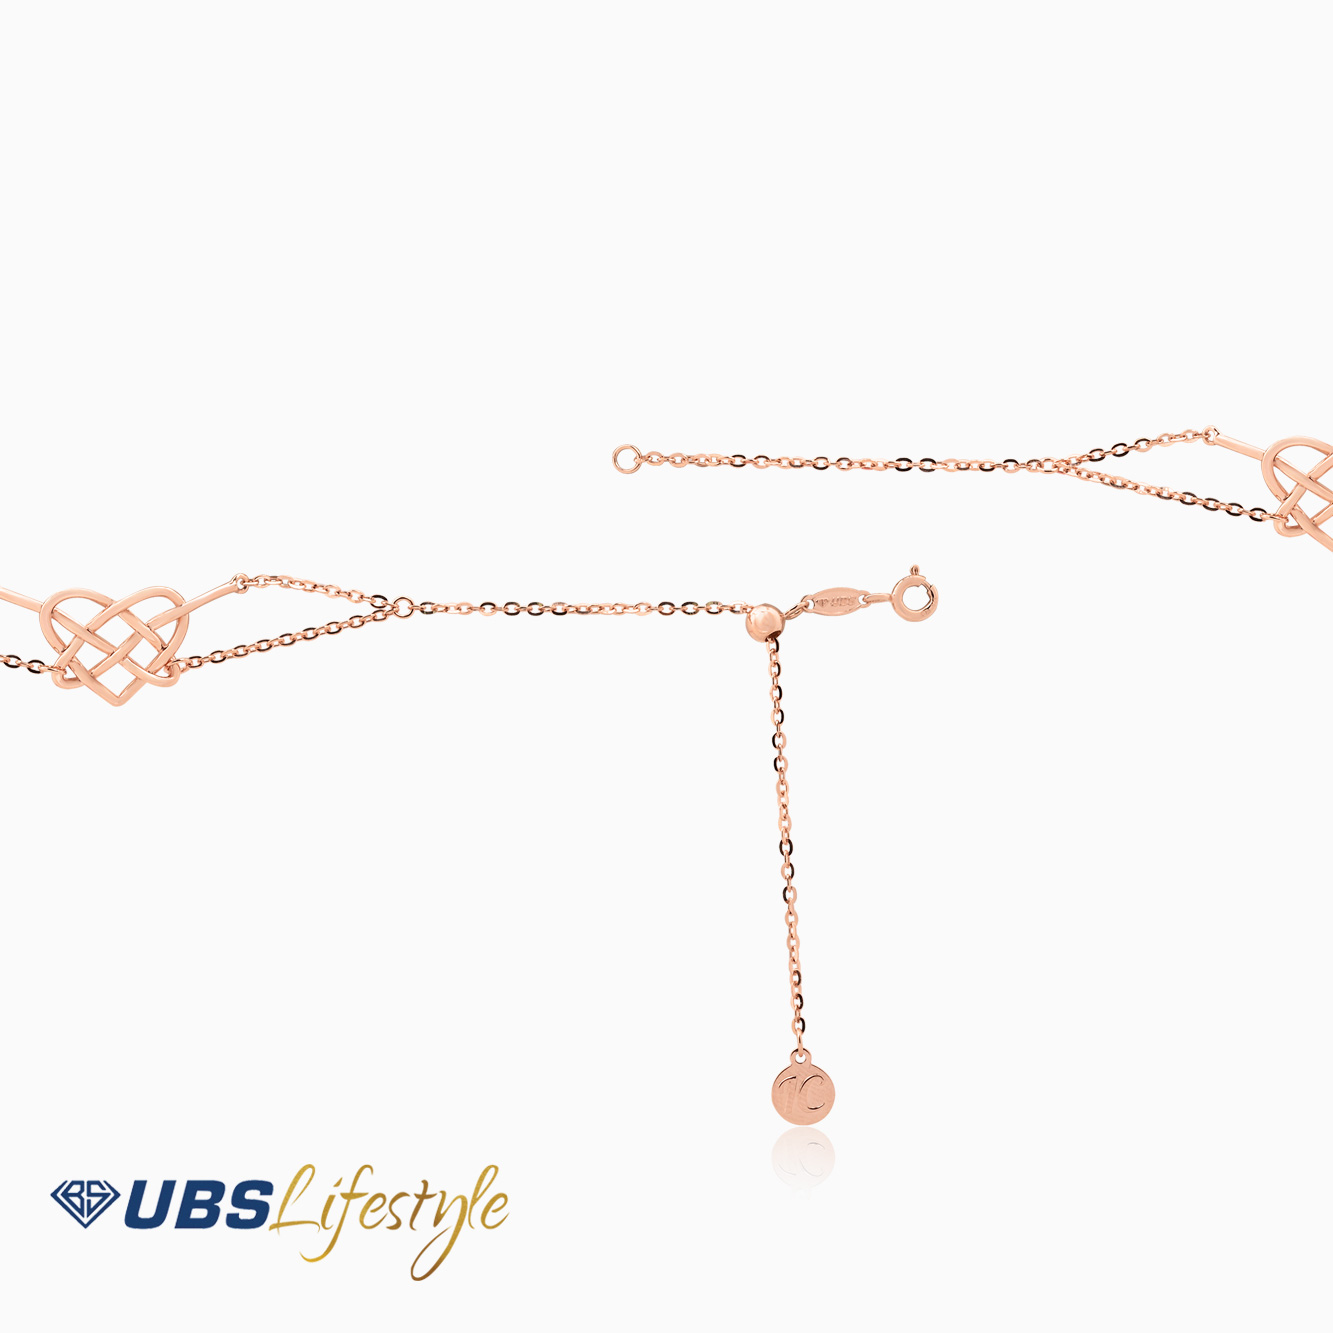 UBS Gelang Emas Ikatan Cinta - Kgv6399 - 8K